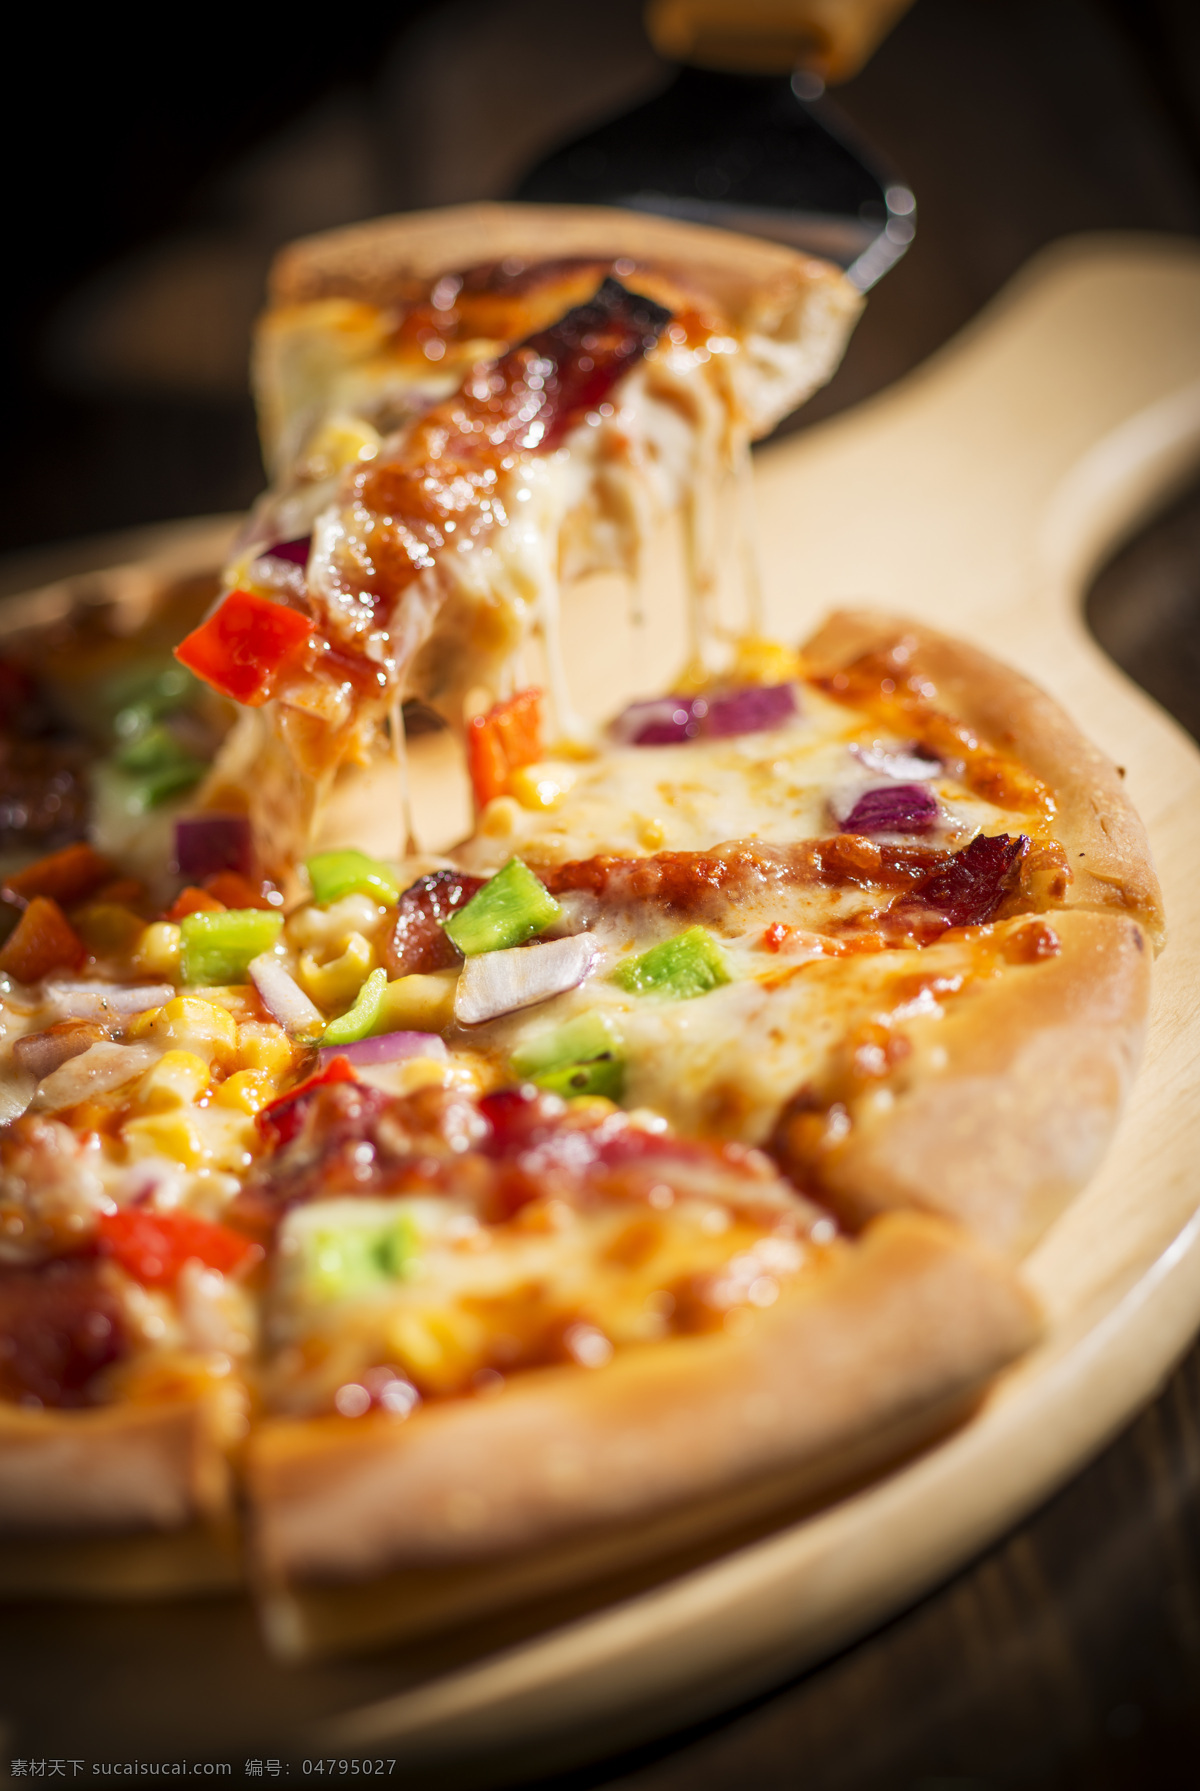 香肠披萨 西餐 香肠 披萨 萨拉米 高清西餐照片 美食 餐饮美食 西餐美食